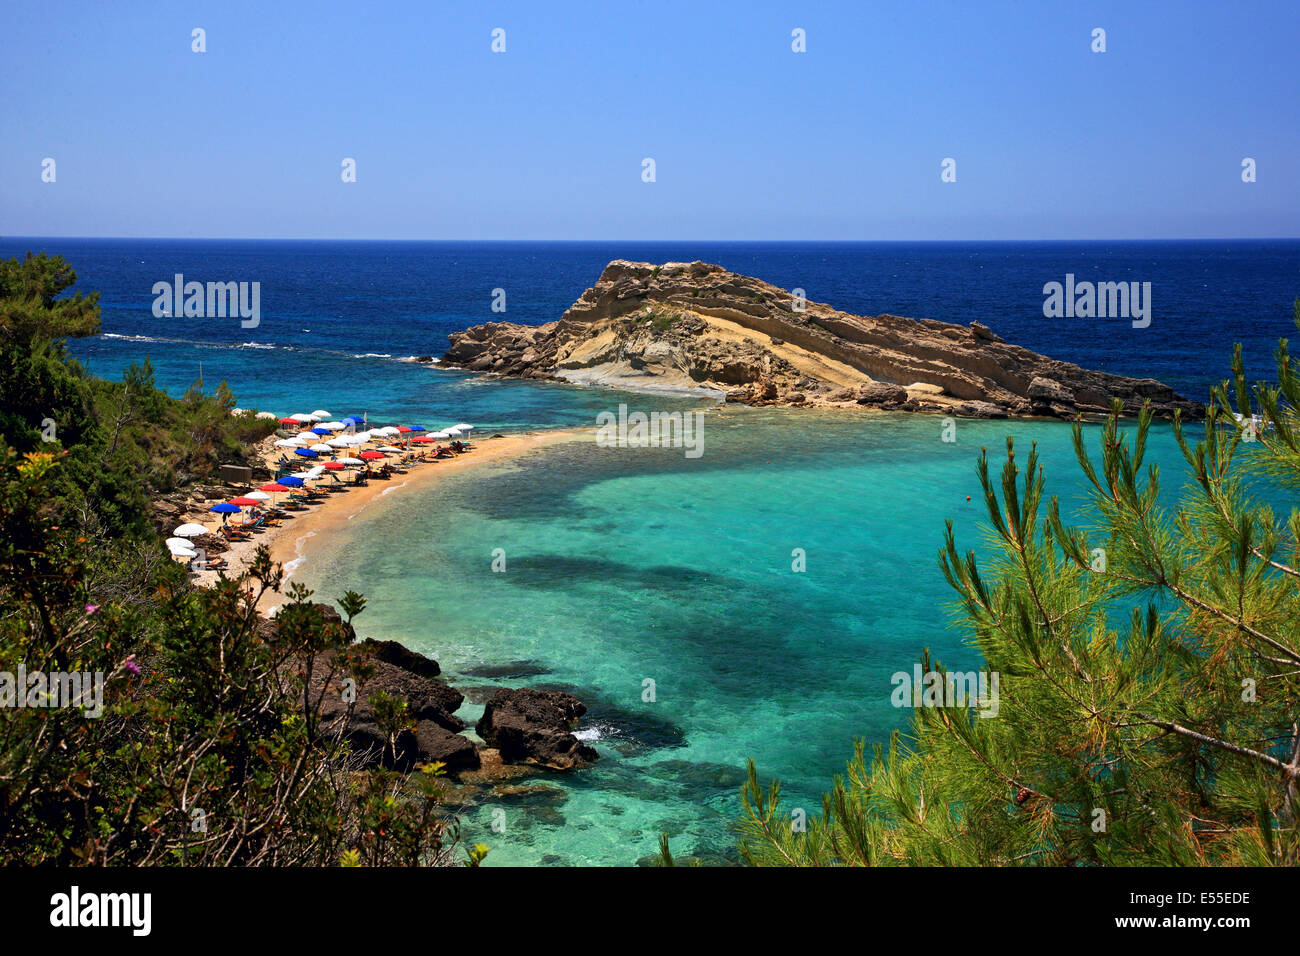 Tourkopodaro (das bedeutet "Türkische Fuß") am Strand, am Leivatho, nahe an der Stadt Argostoli, Kefalonia Insel, Ionisches Meer, Griechenland Stockfoto